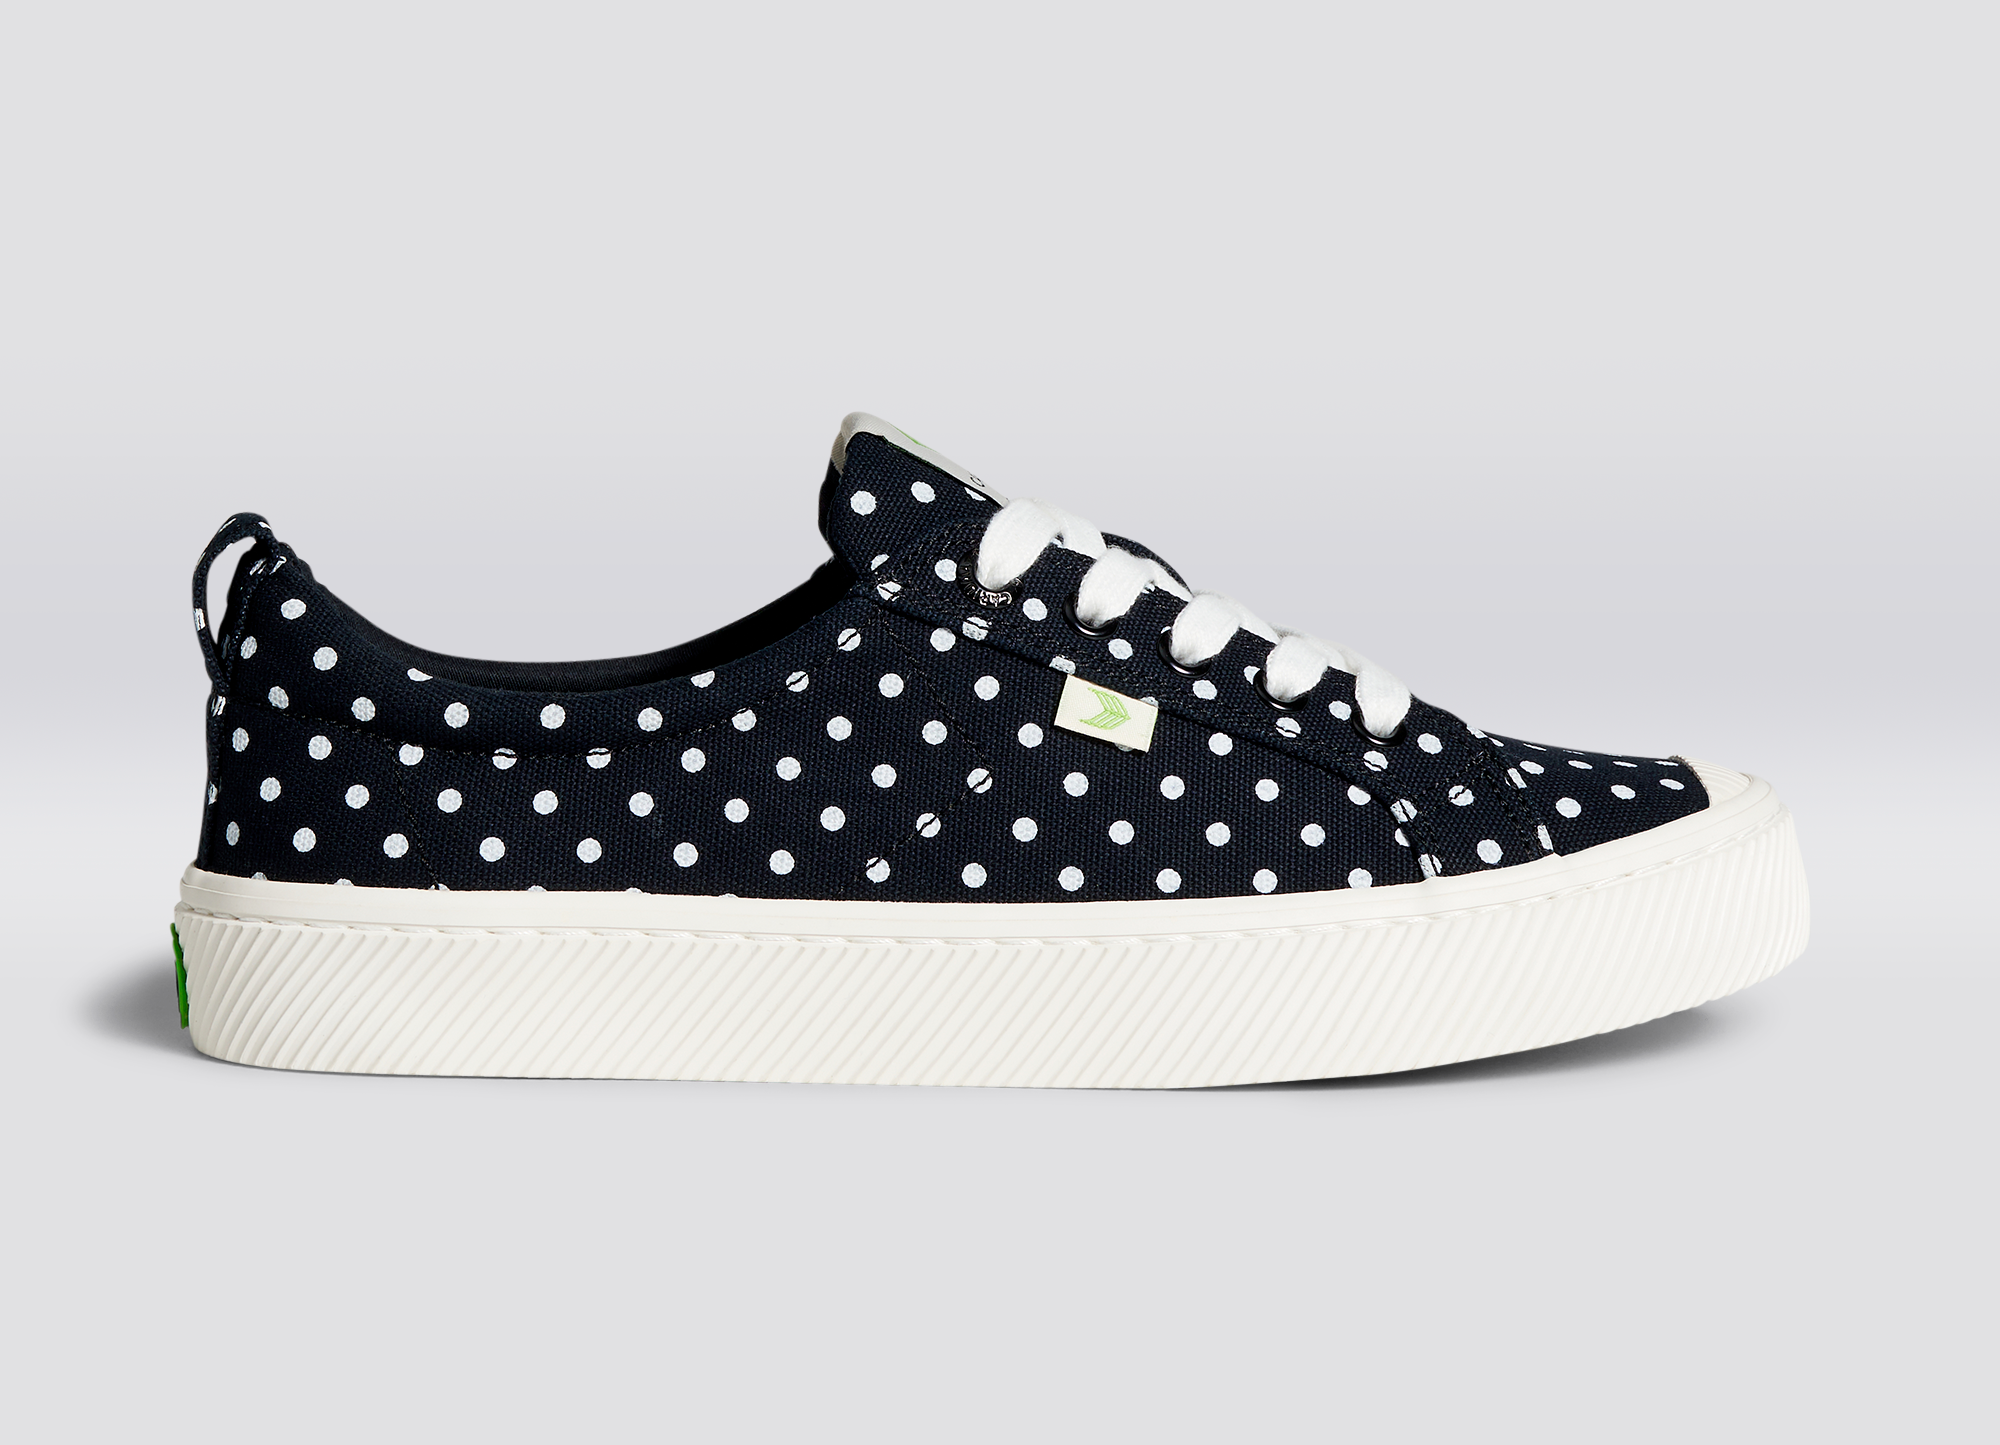 Cariuma OCA Low Black Polka Dots Canvas Sneaker - Black